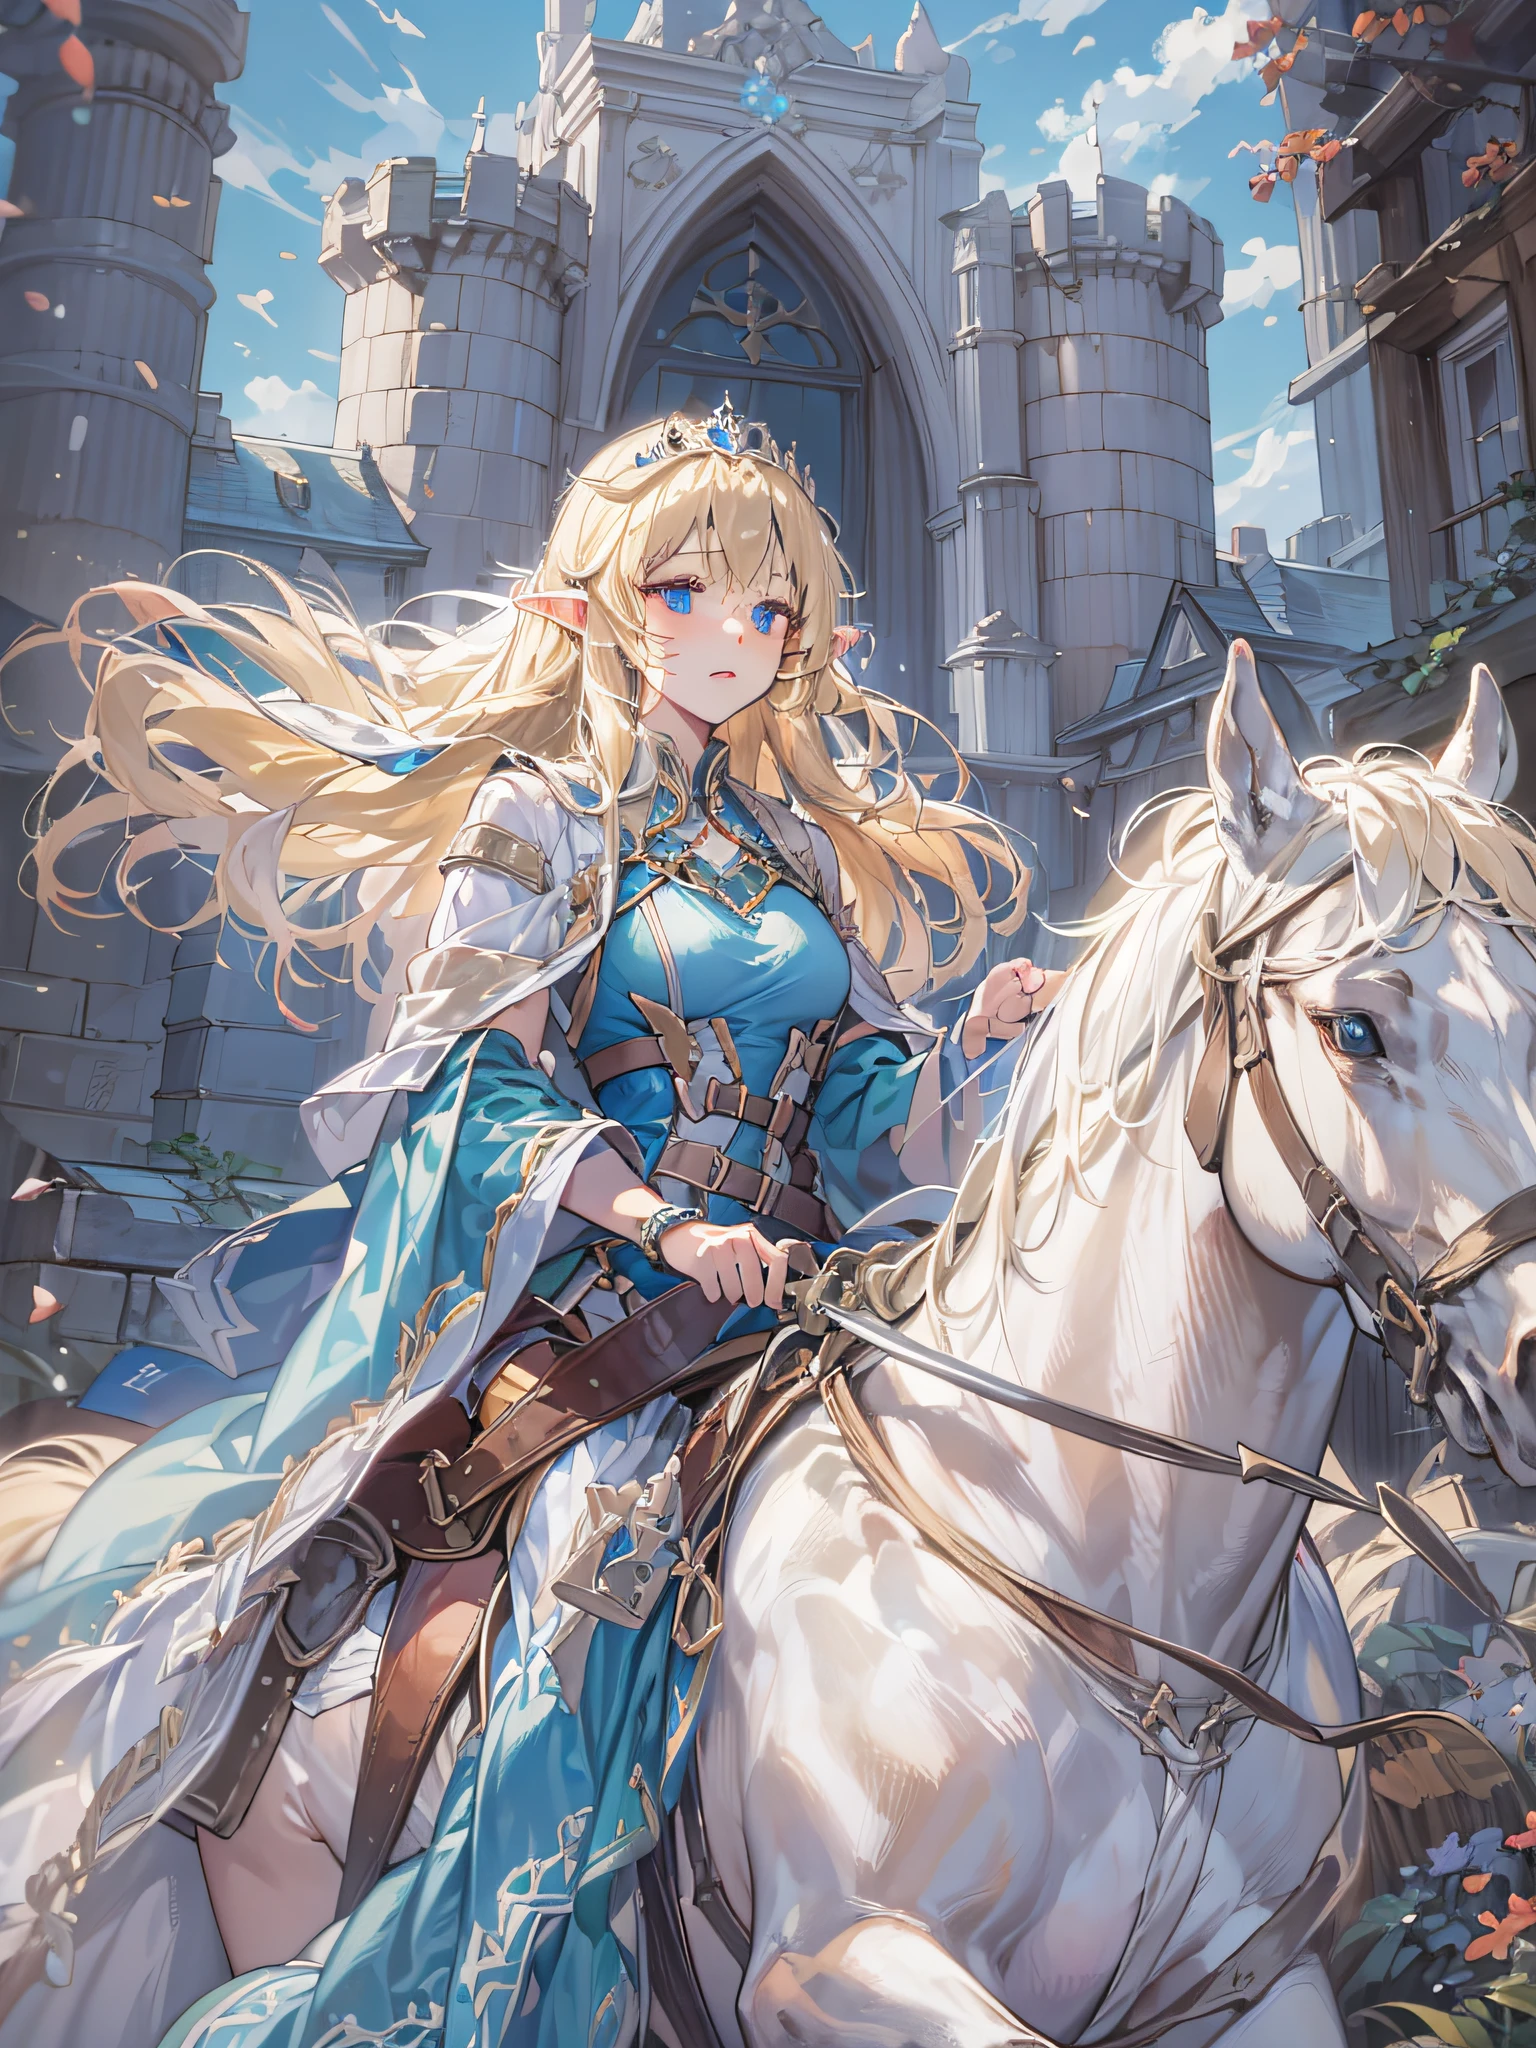 garota elfa, cabelo loiro longo, olhos azuis, Vestido azul, silver tiara, tendo uma espada cerimonial, Montando um cavalo branco, frente de um castelo